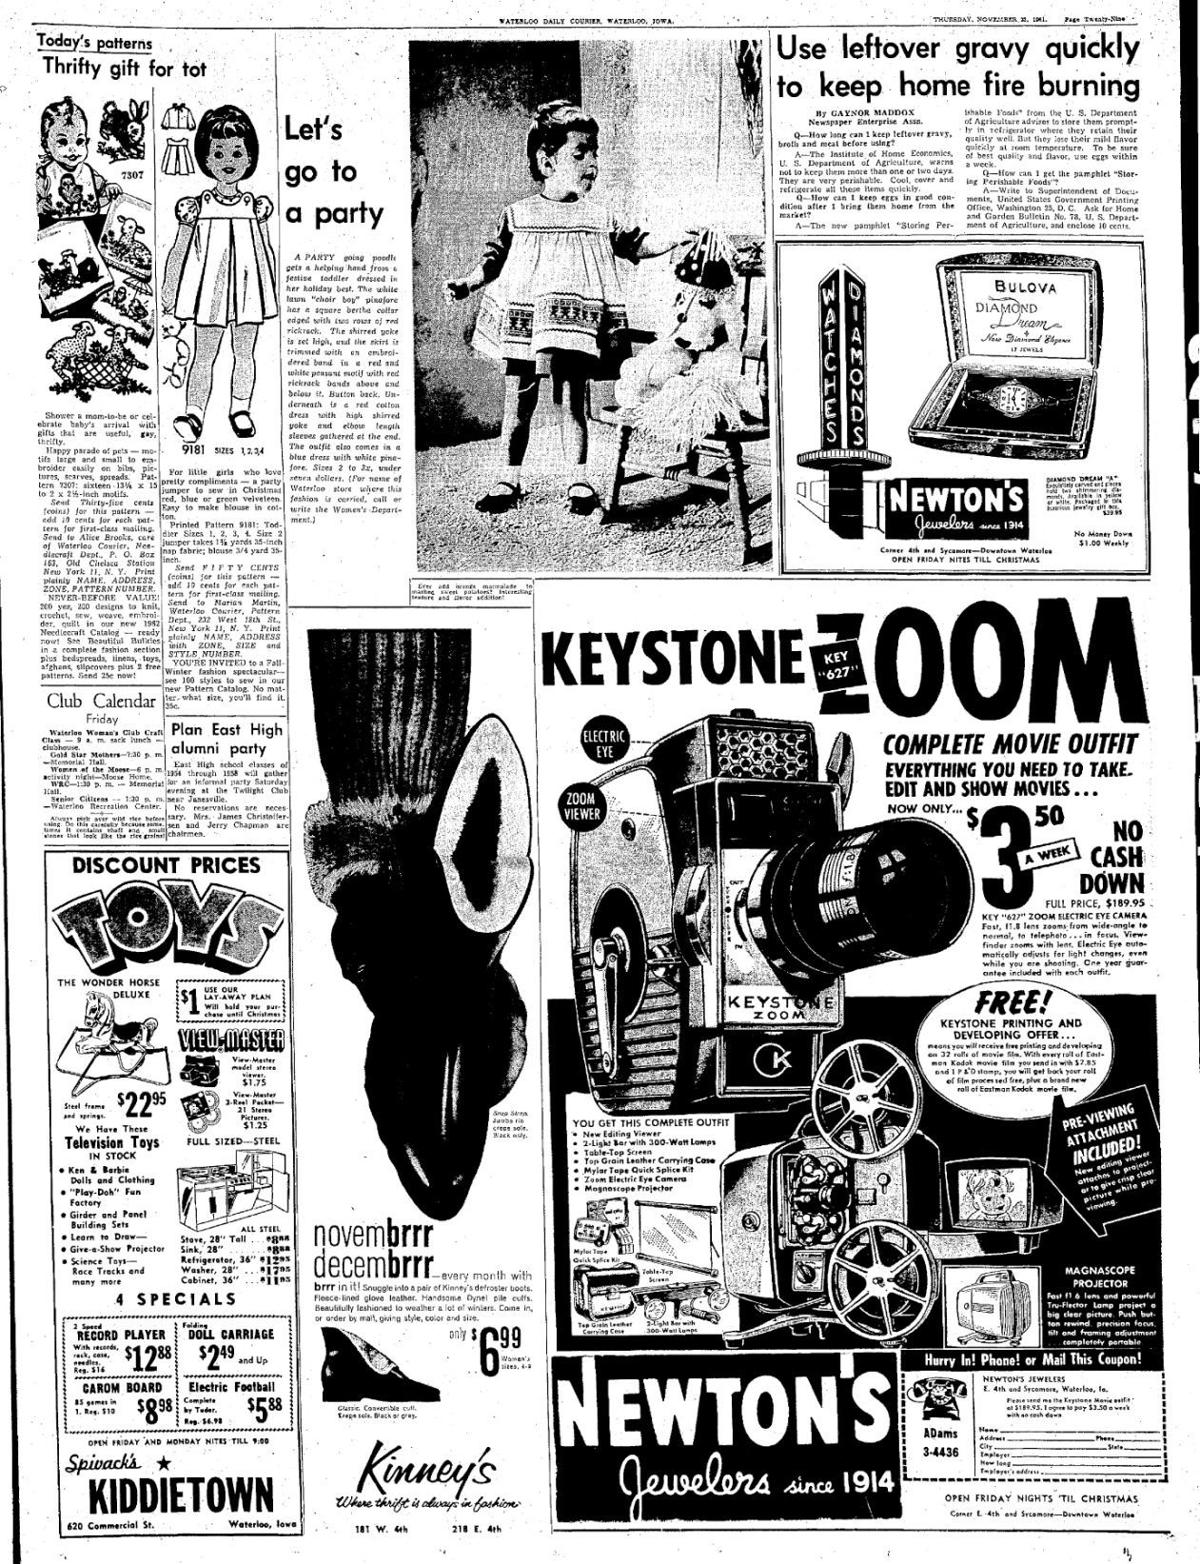 1961 ads